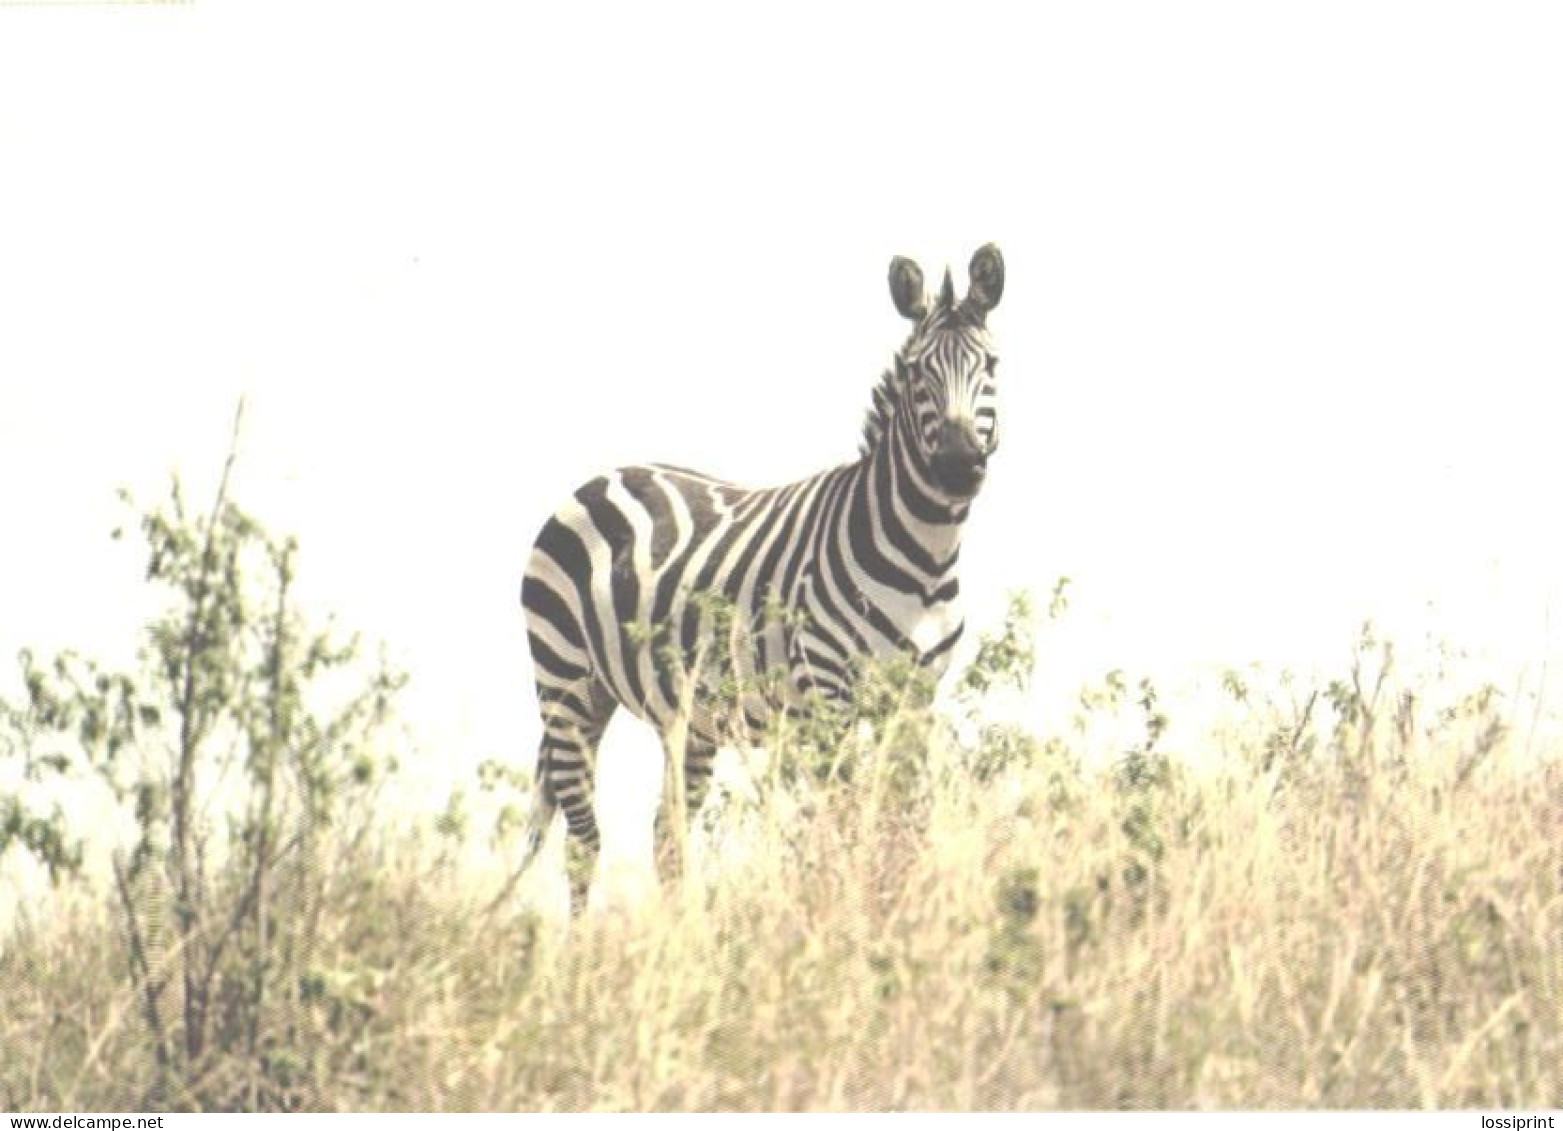 Looking Zebra - Zebras